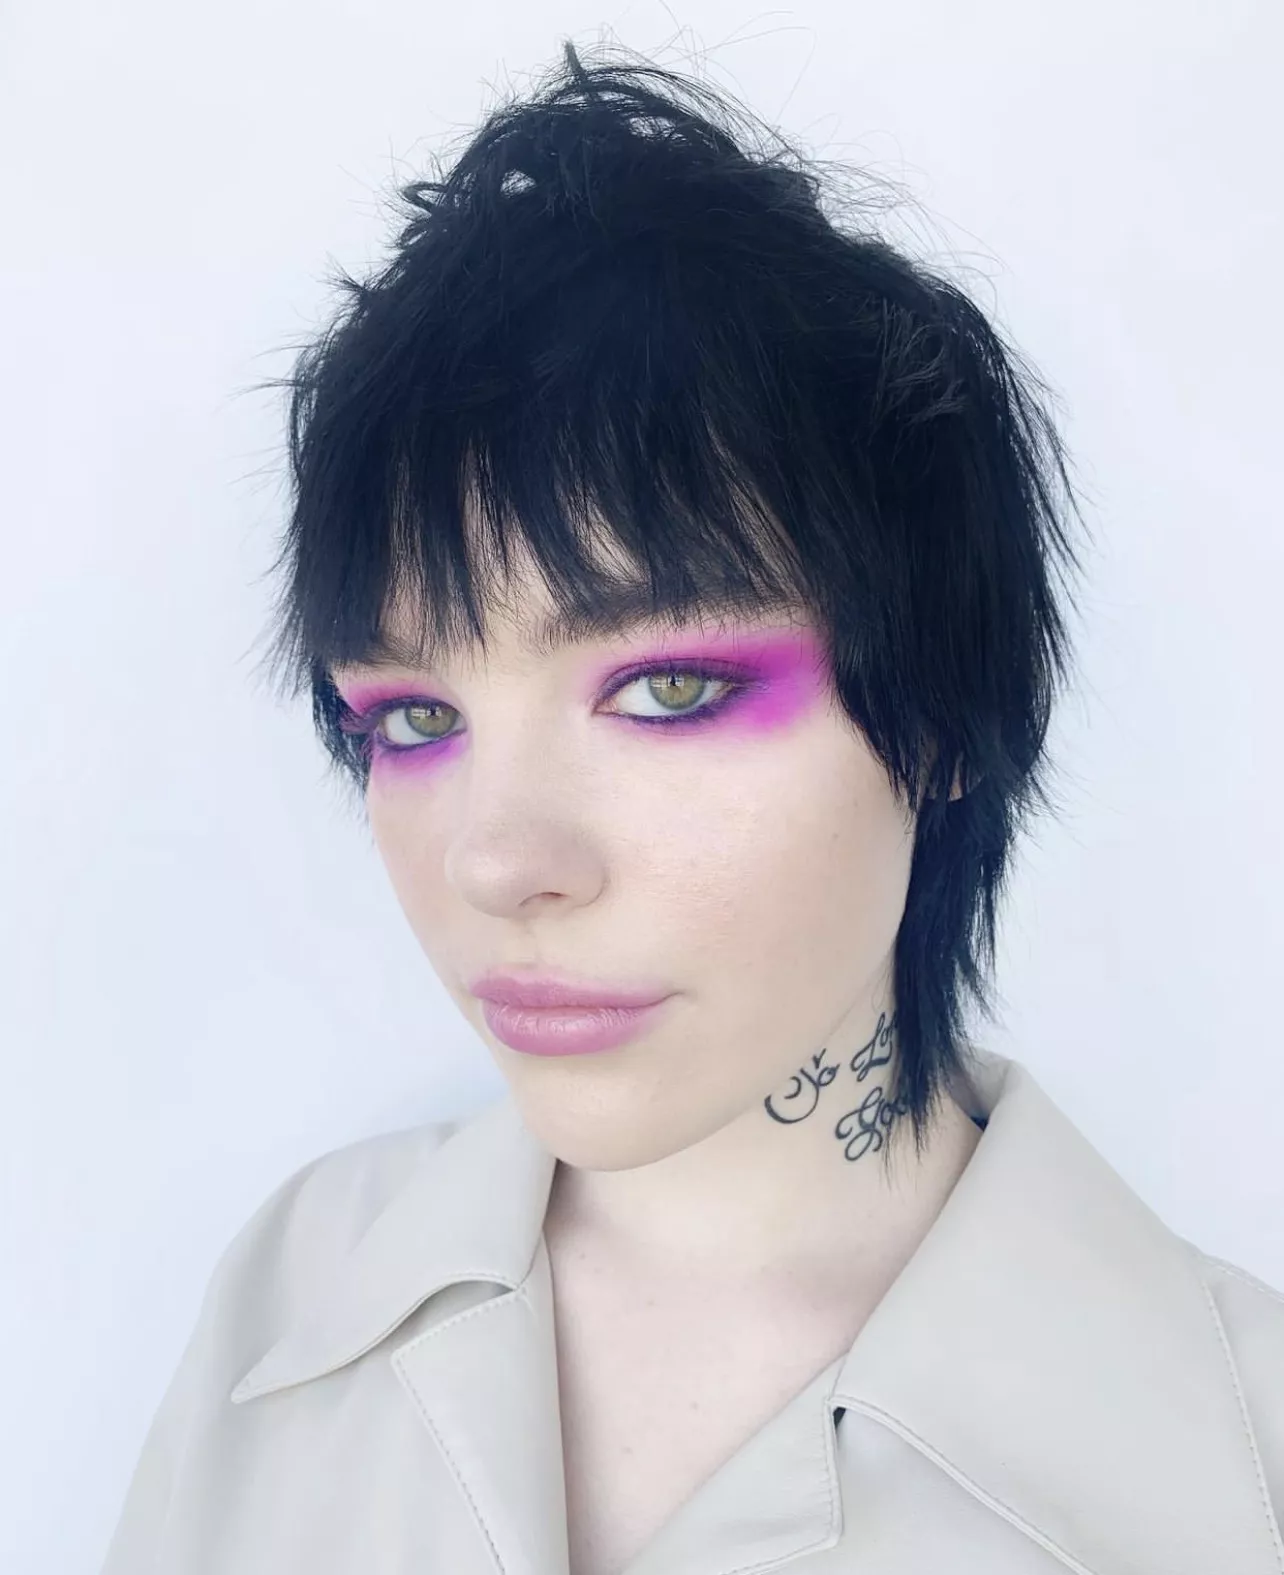 neon makeup